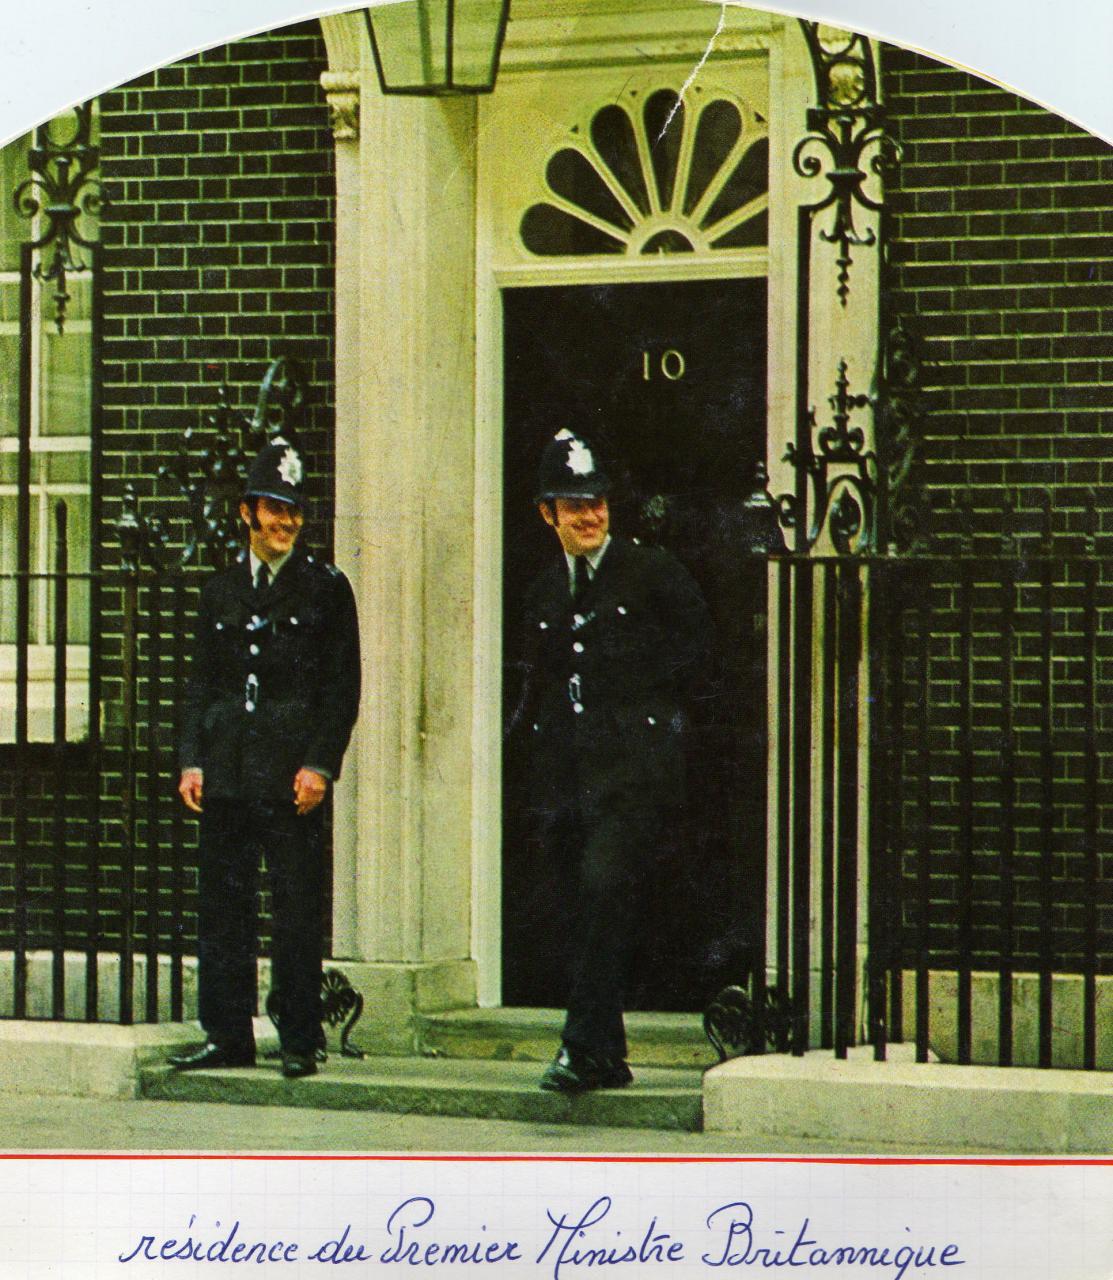 La résidence du 1er ministre britannique